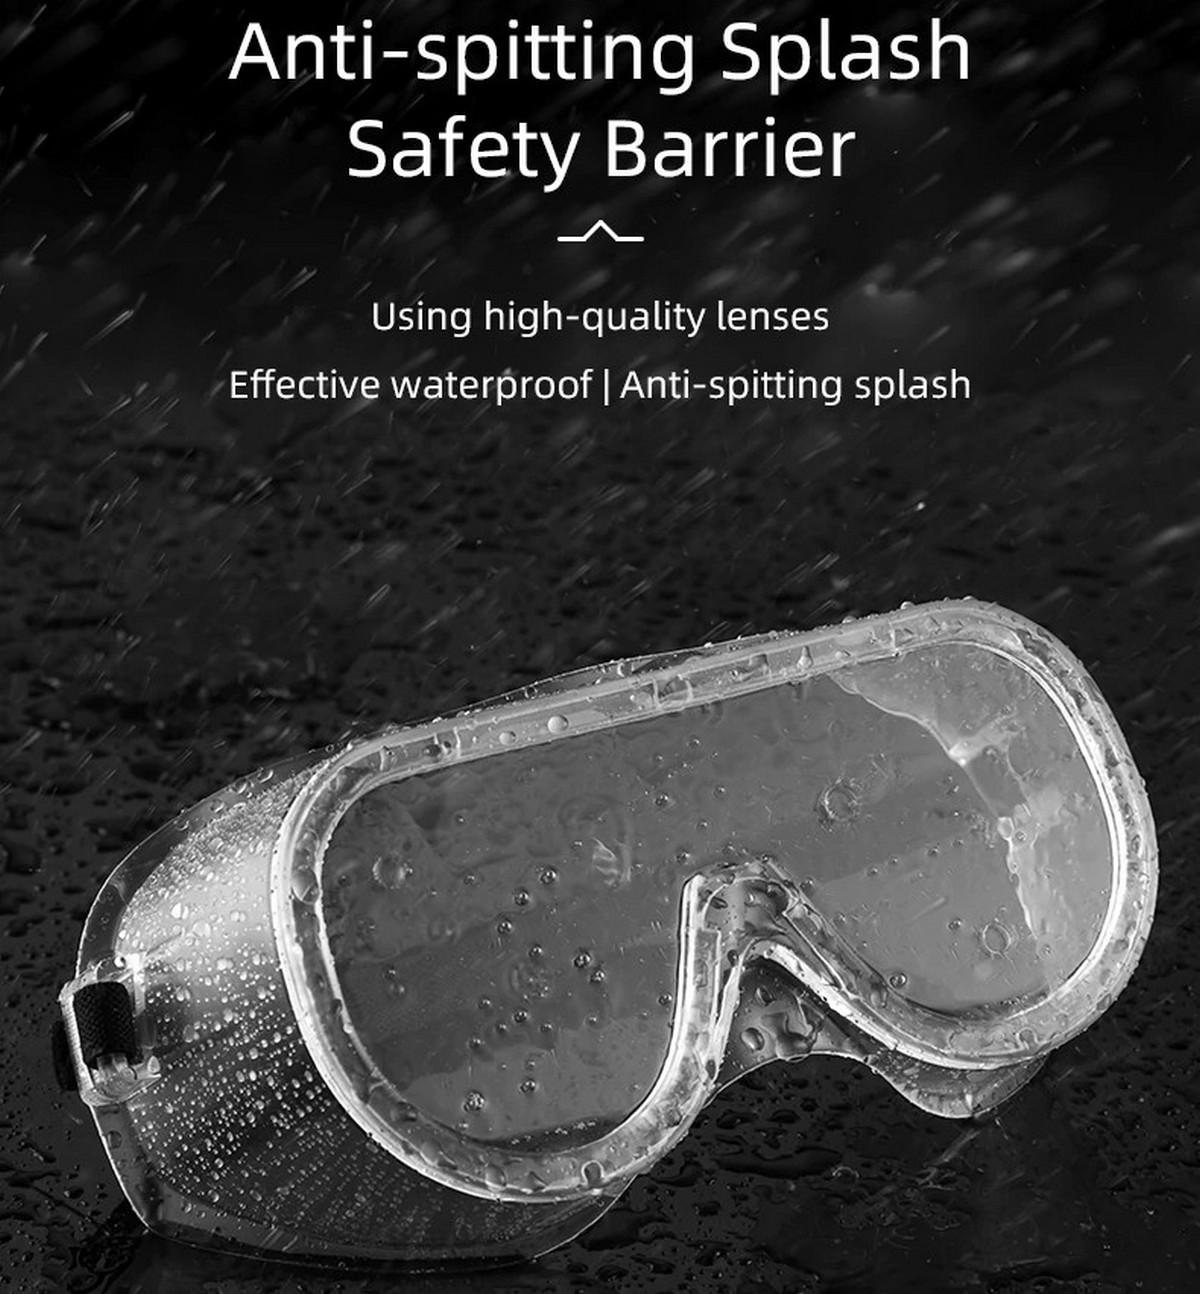 skyddsglasögon som är resistenta mot dammdroppar och stötar